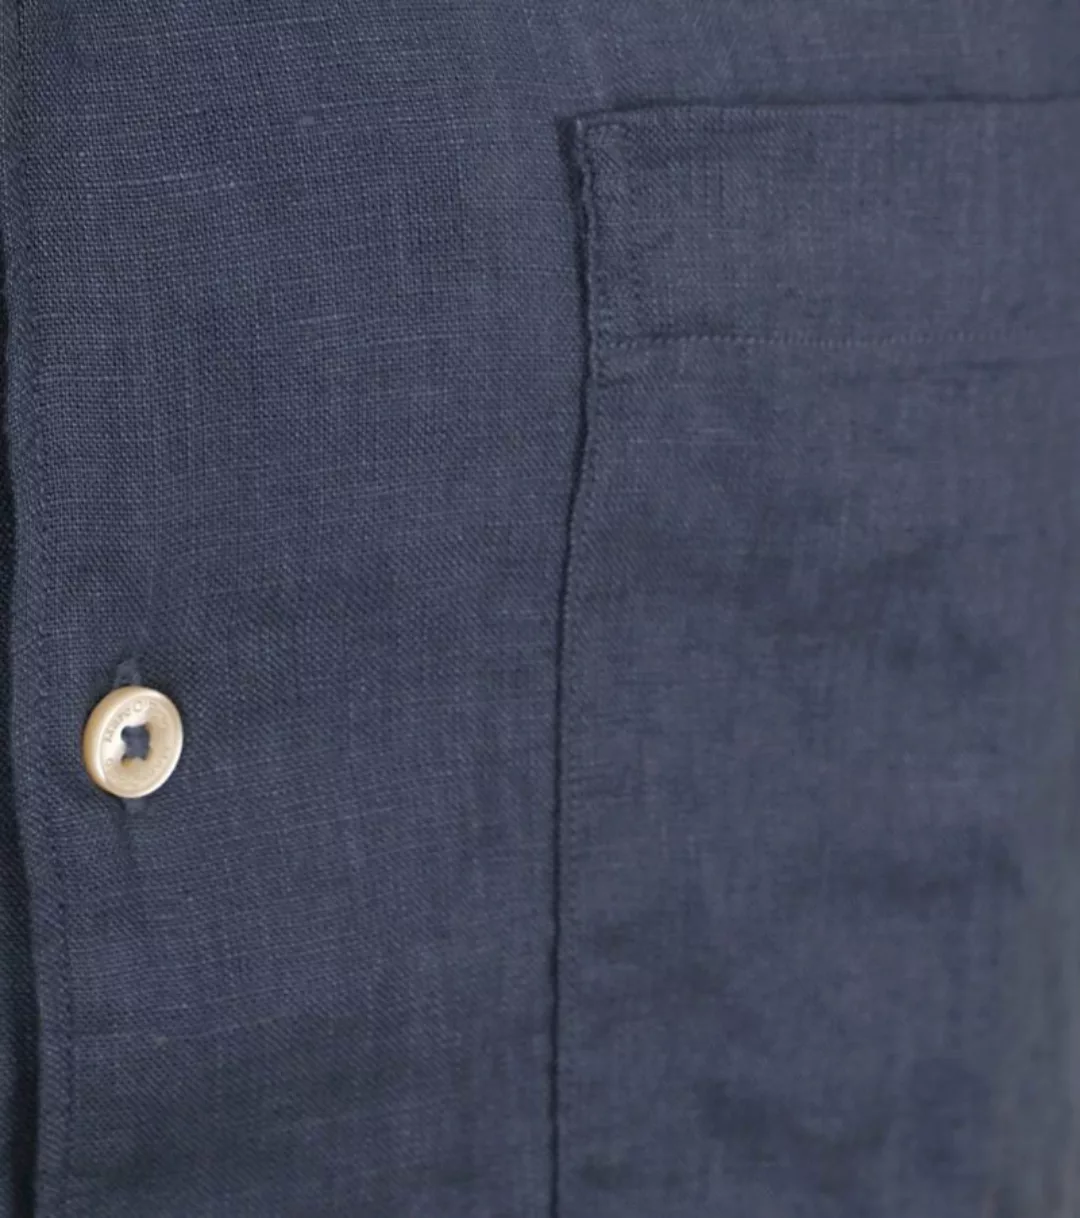 Marc O'Polo Hemd Short Sleeves Leinen Navy - Größe XXL günstig online kaufen